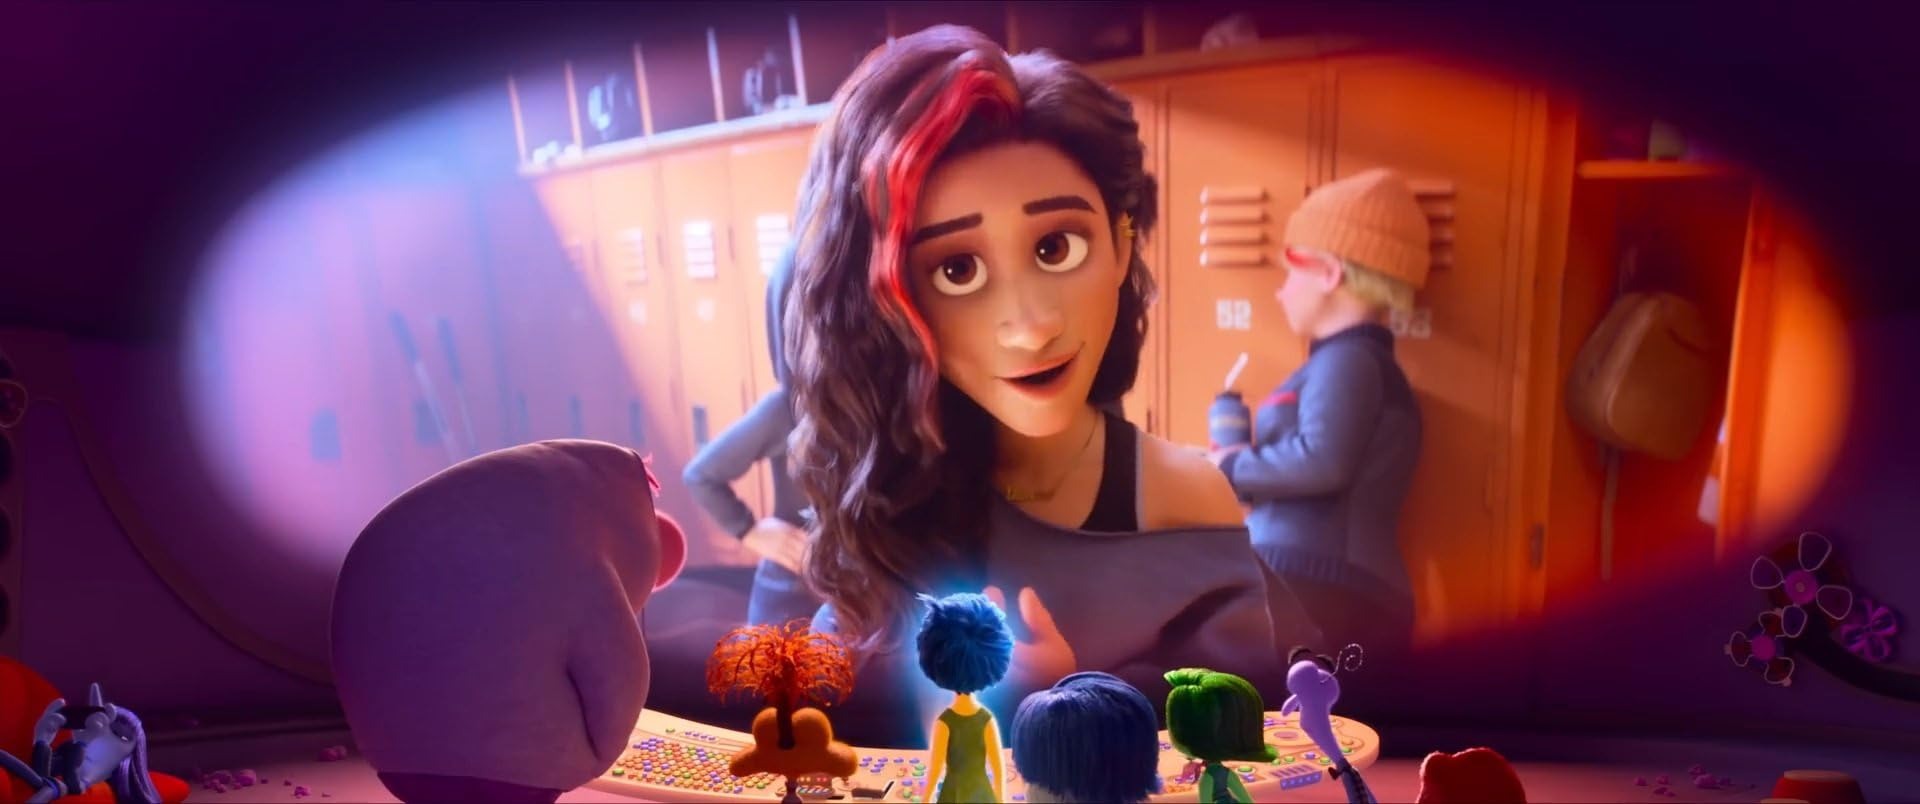 Disney-Pixar-Inside-Out-2-Nostalgia-Emot